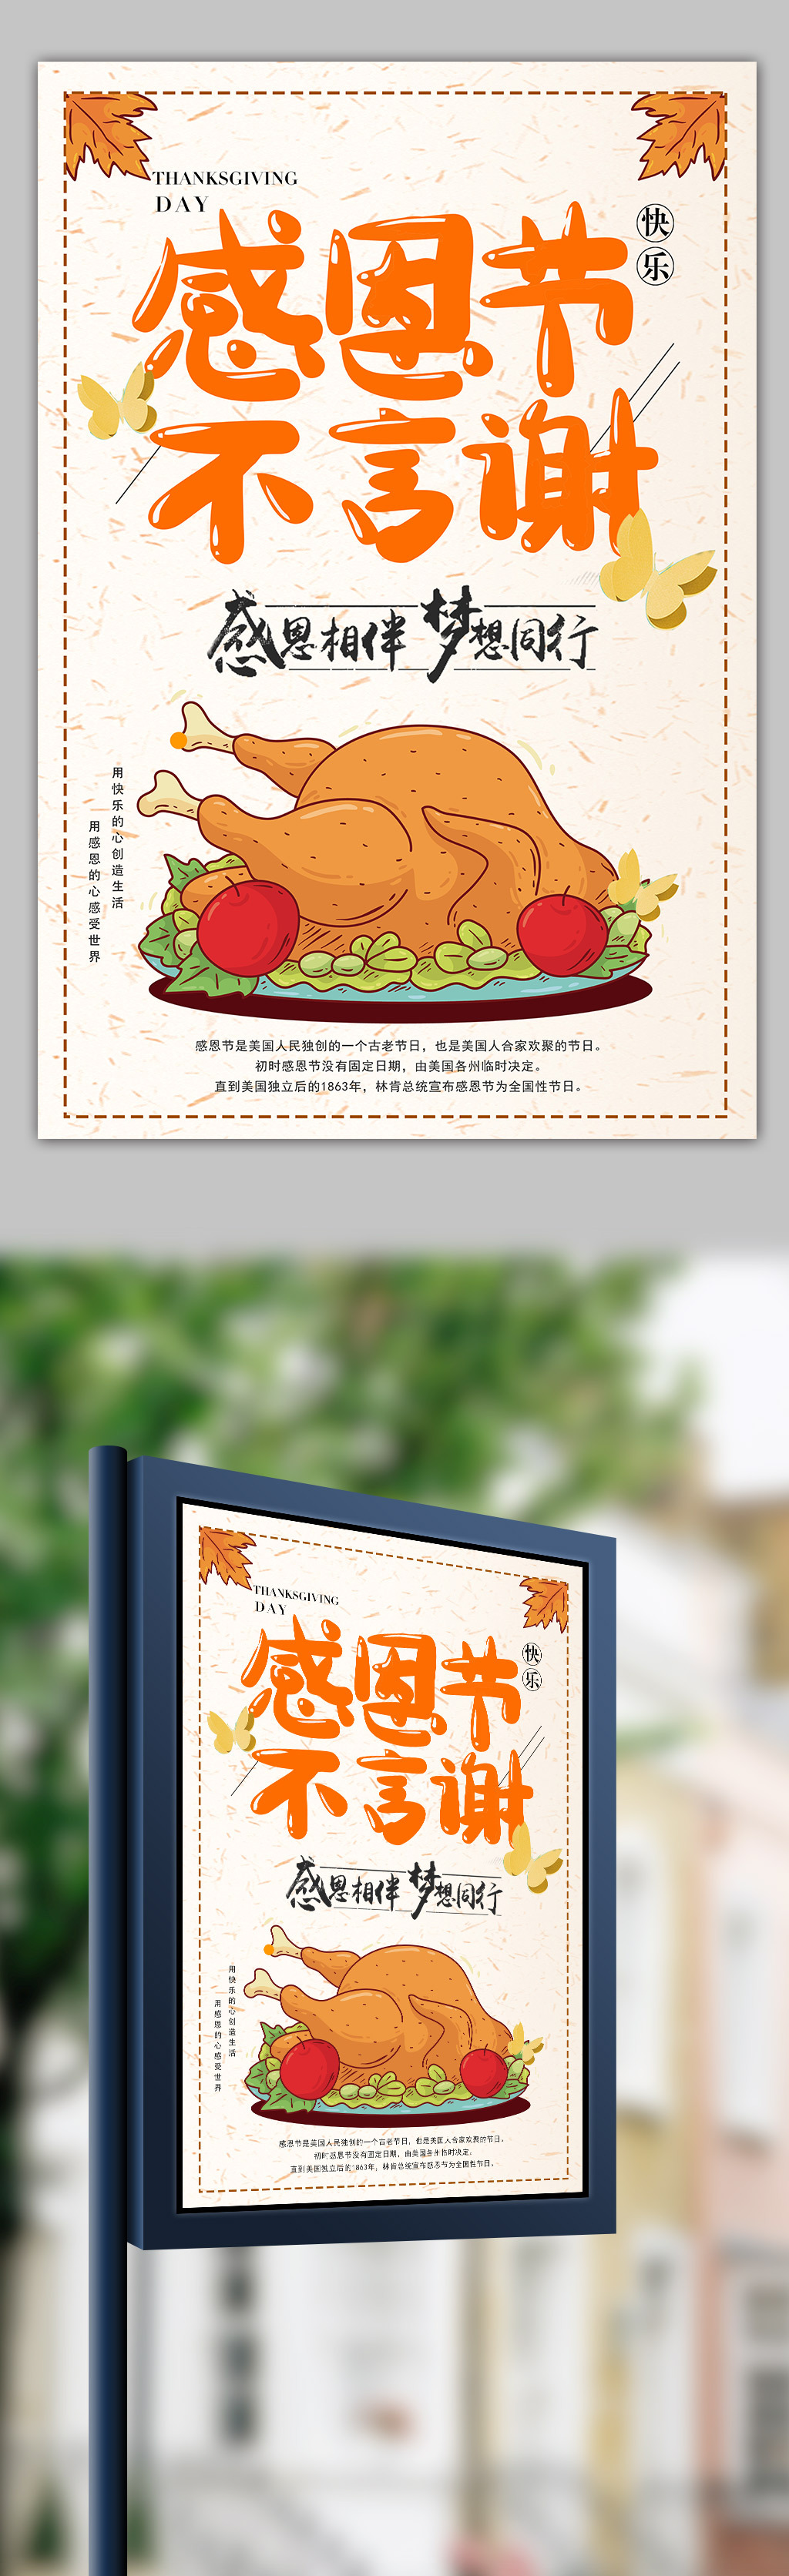 橙色卡通手绘清新感恩节海报素材模板图片